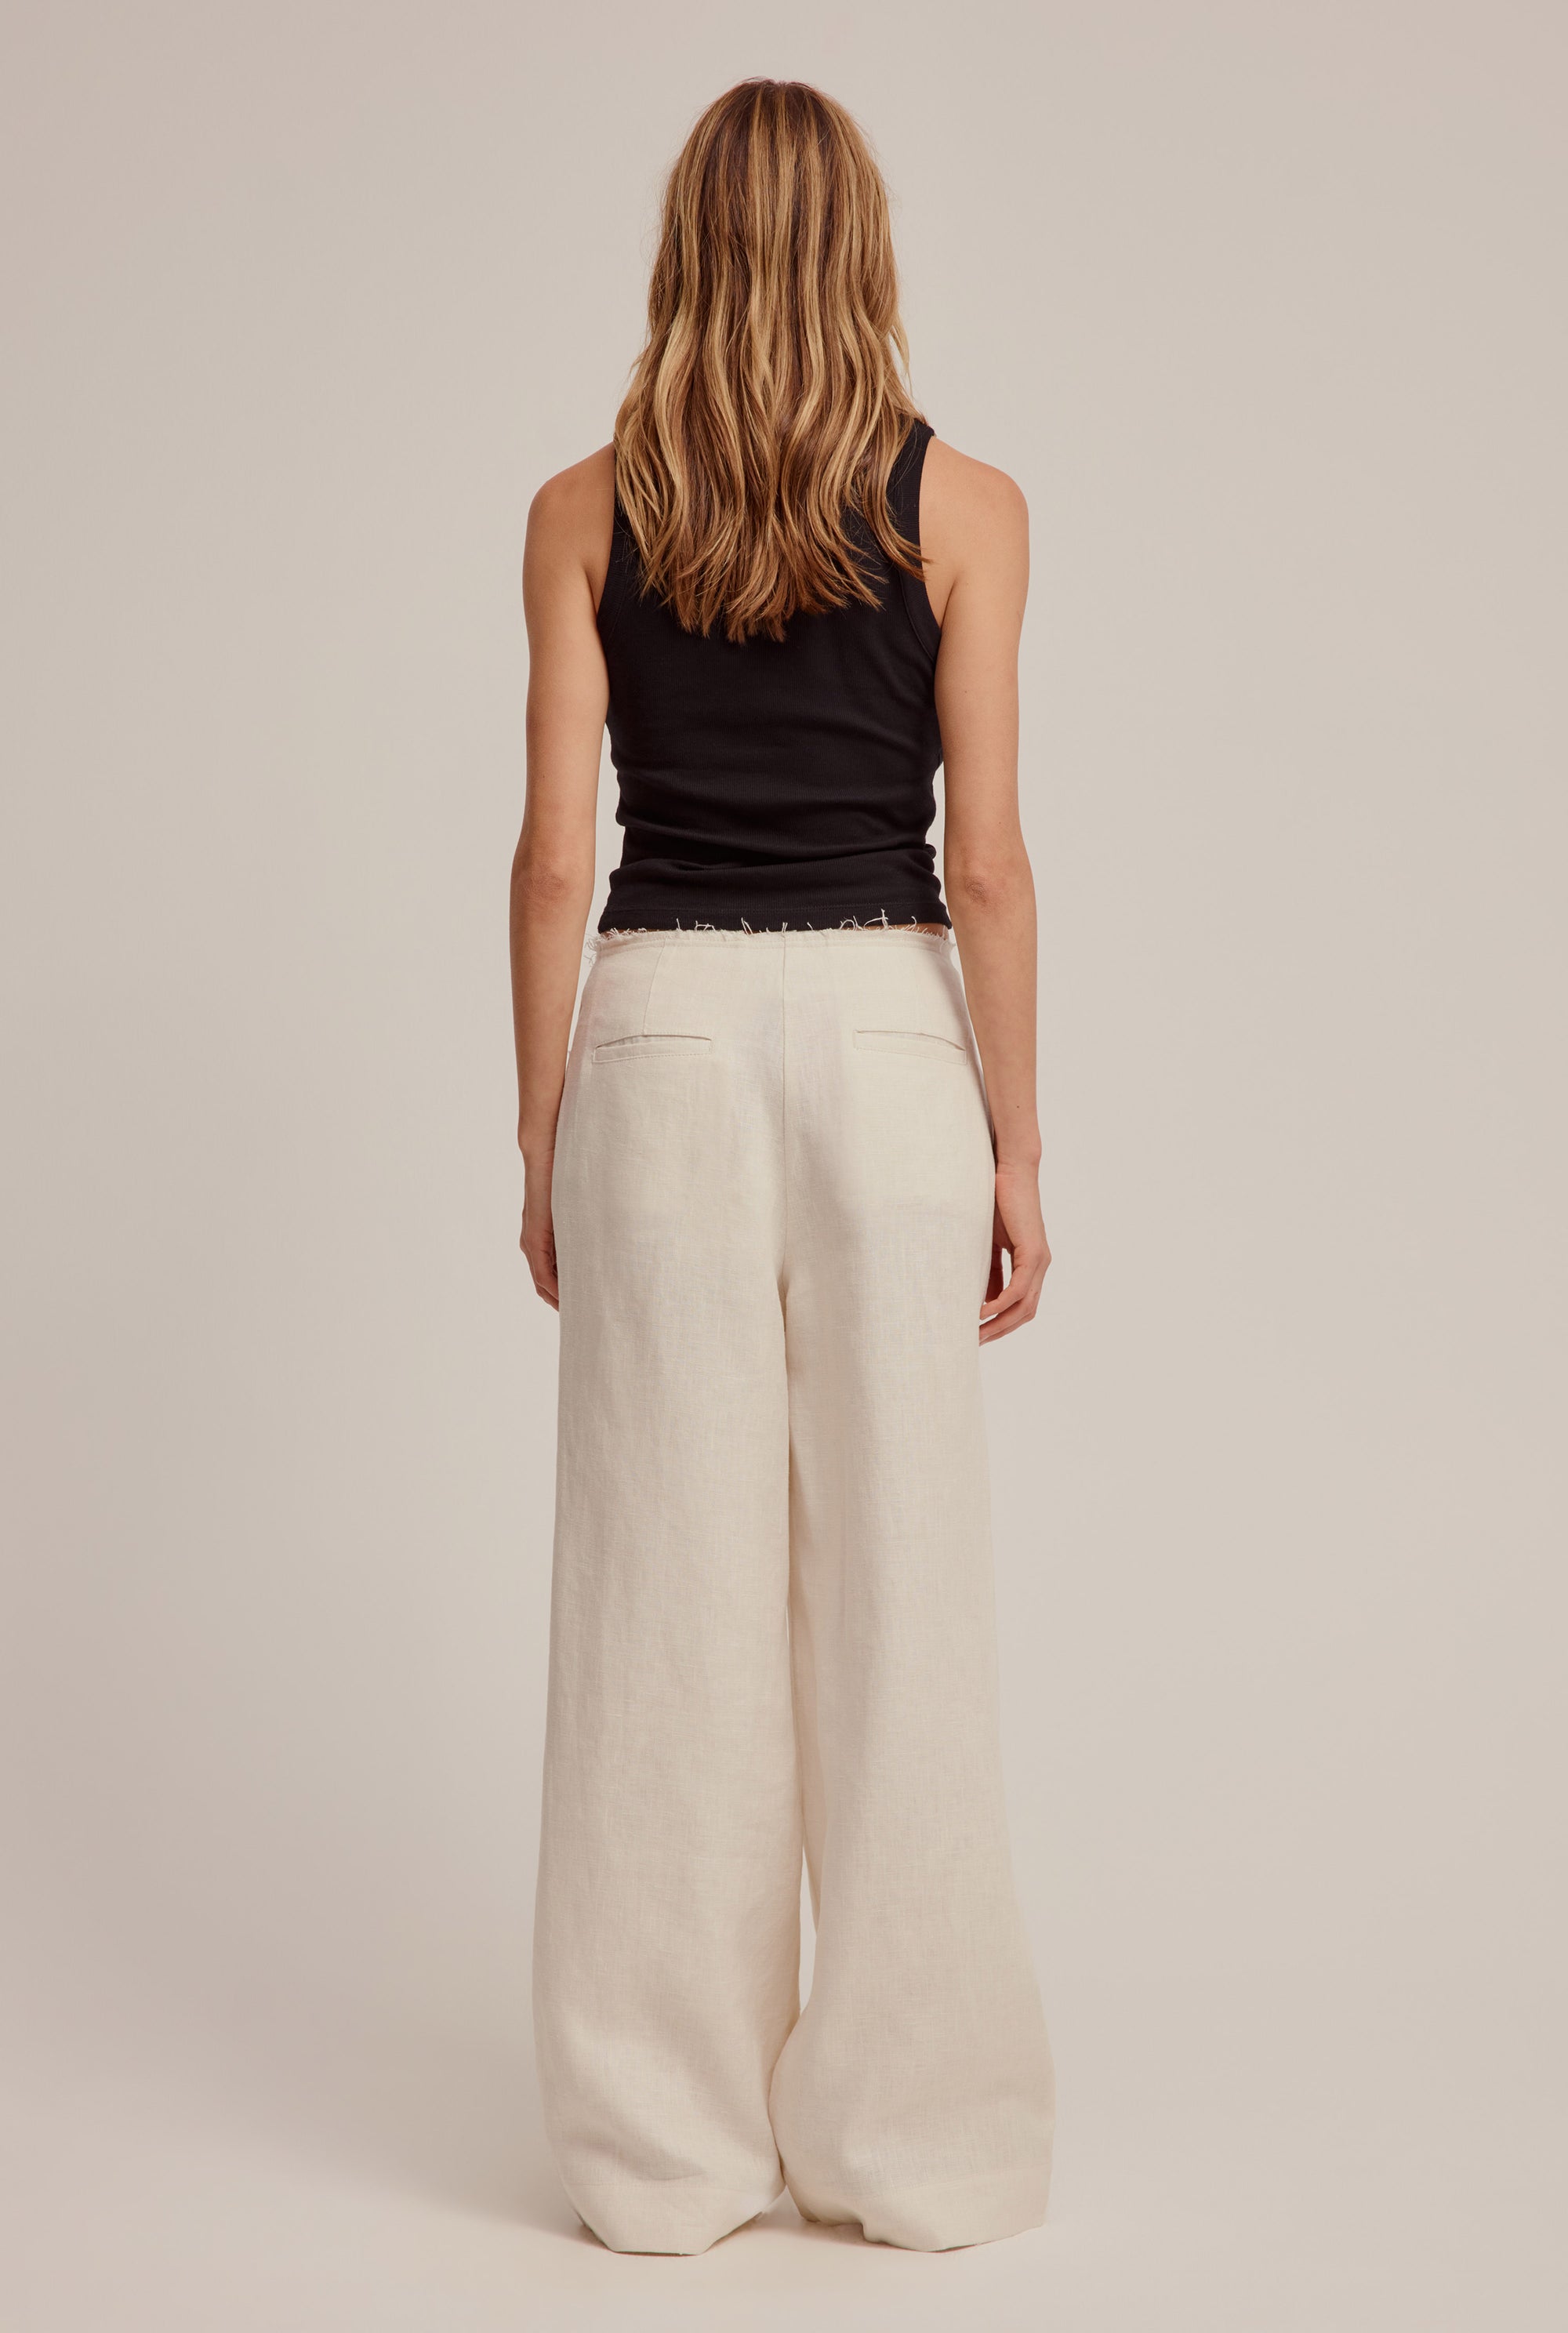 Venroy - Womens Linen Frayed Detail Trouser in Cream | Venroy | Premium ...